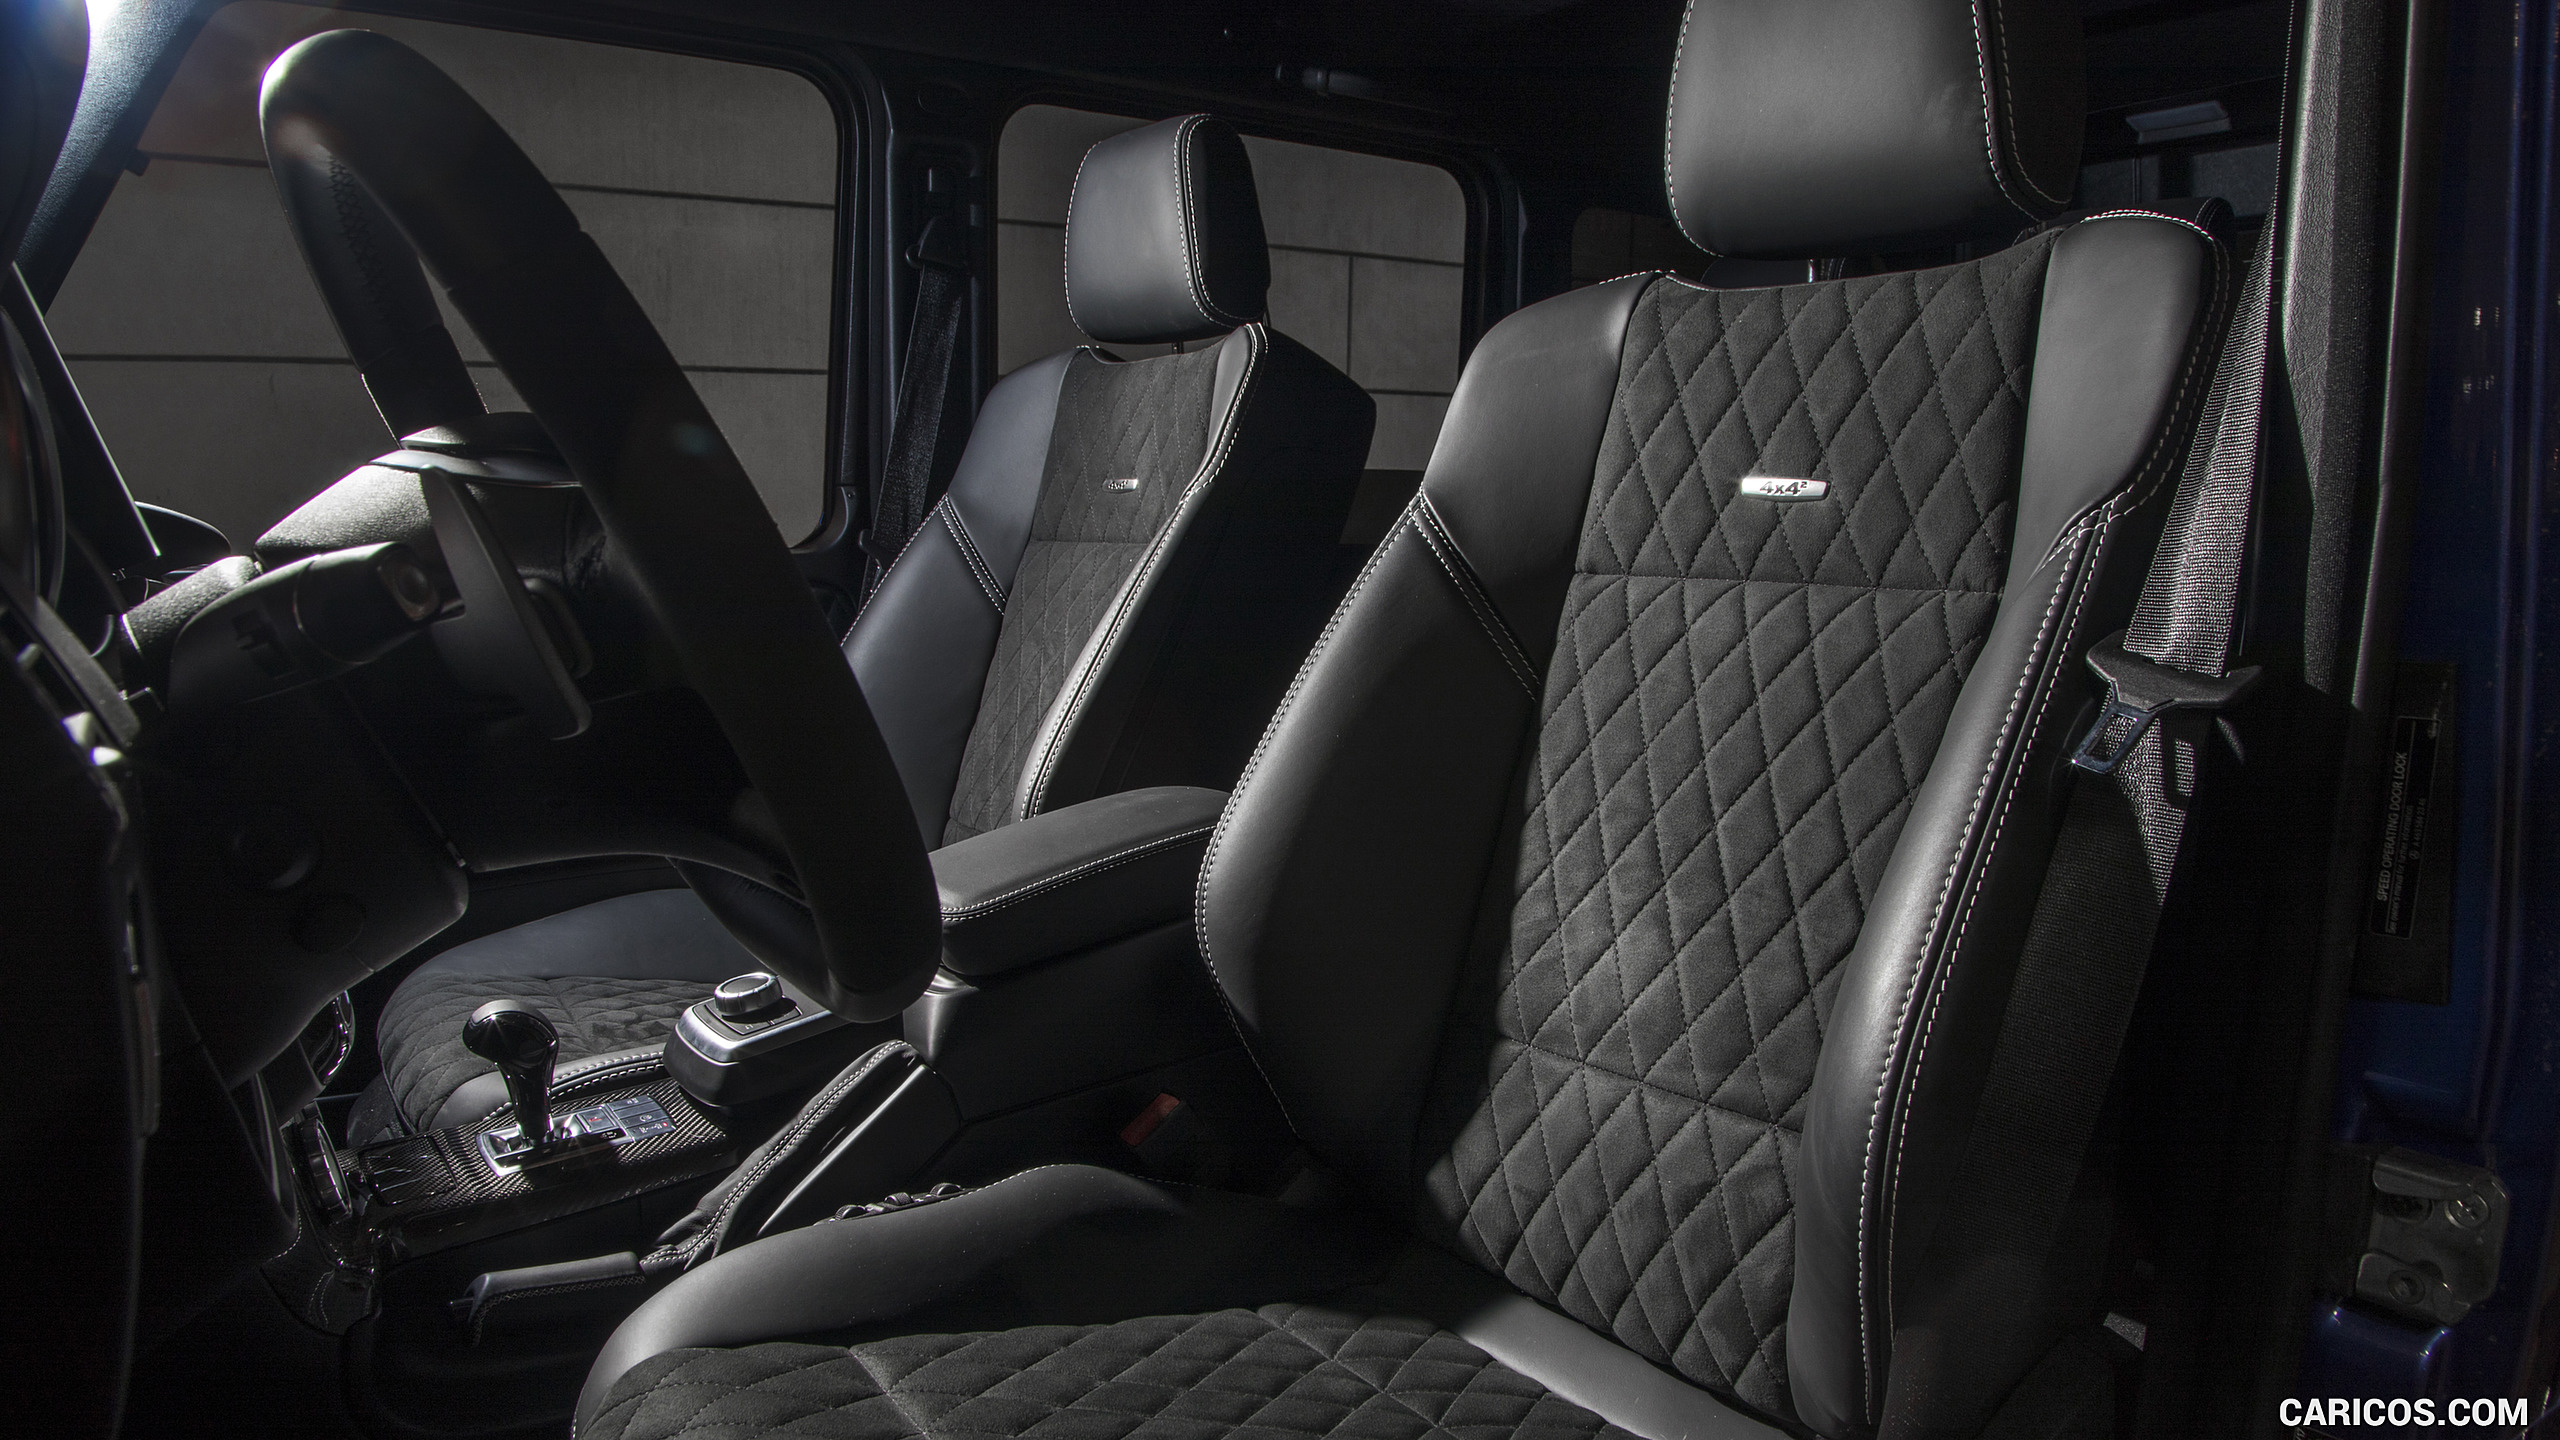 2017 Mercedes-Benz G550 4x4² (US-Spec) - Interior, Front Seats, #43 of 45